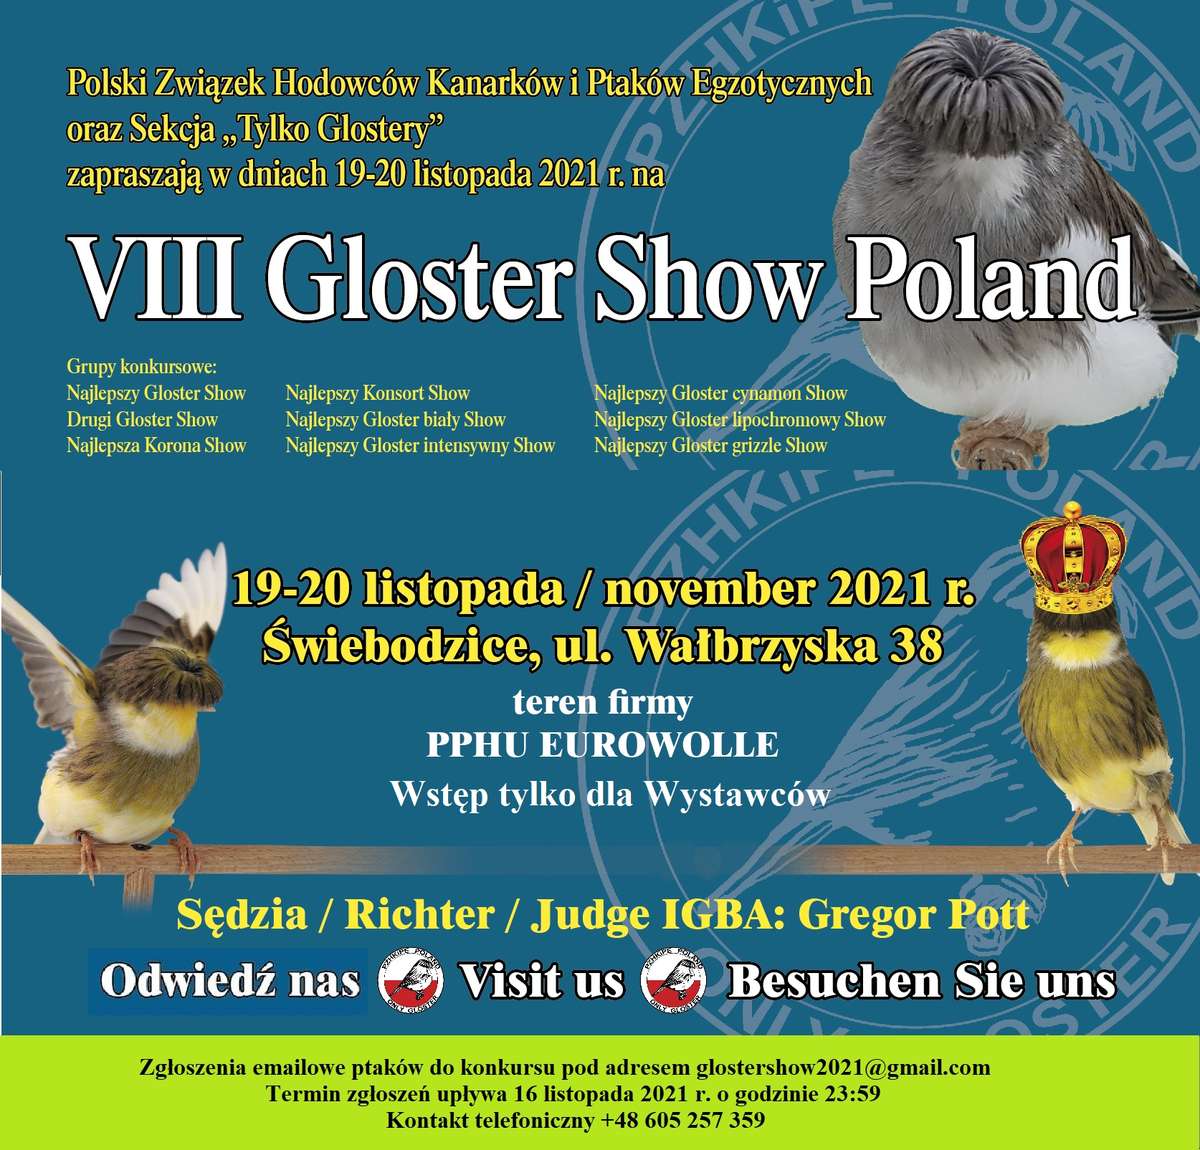 Gloster Show Poland 2021 informacje